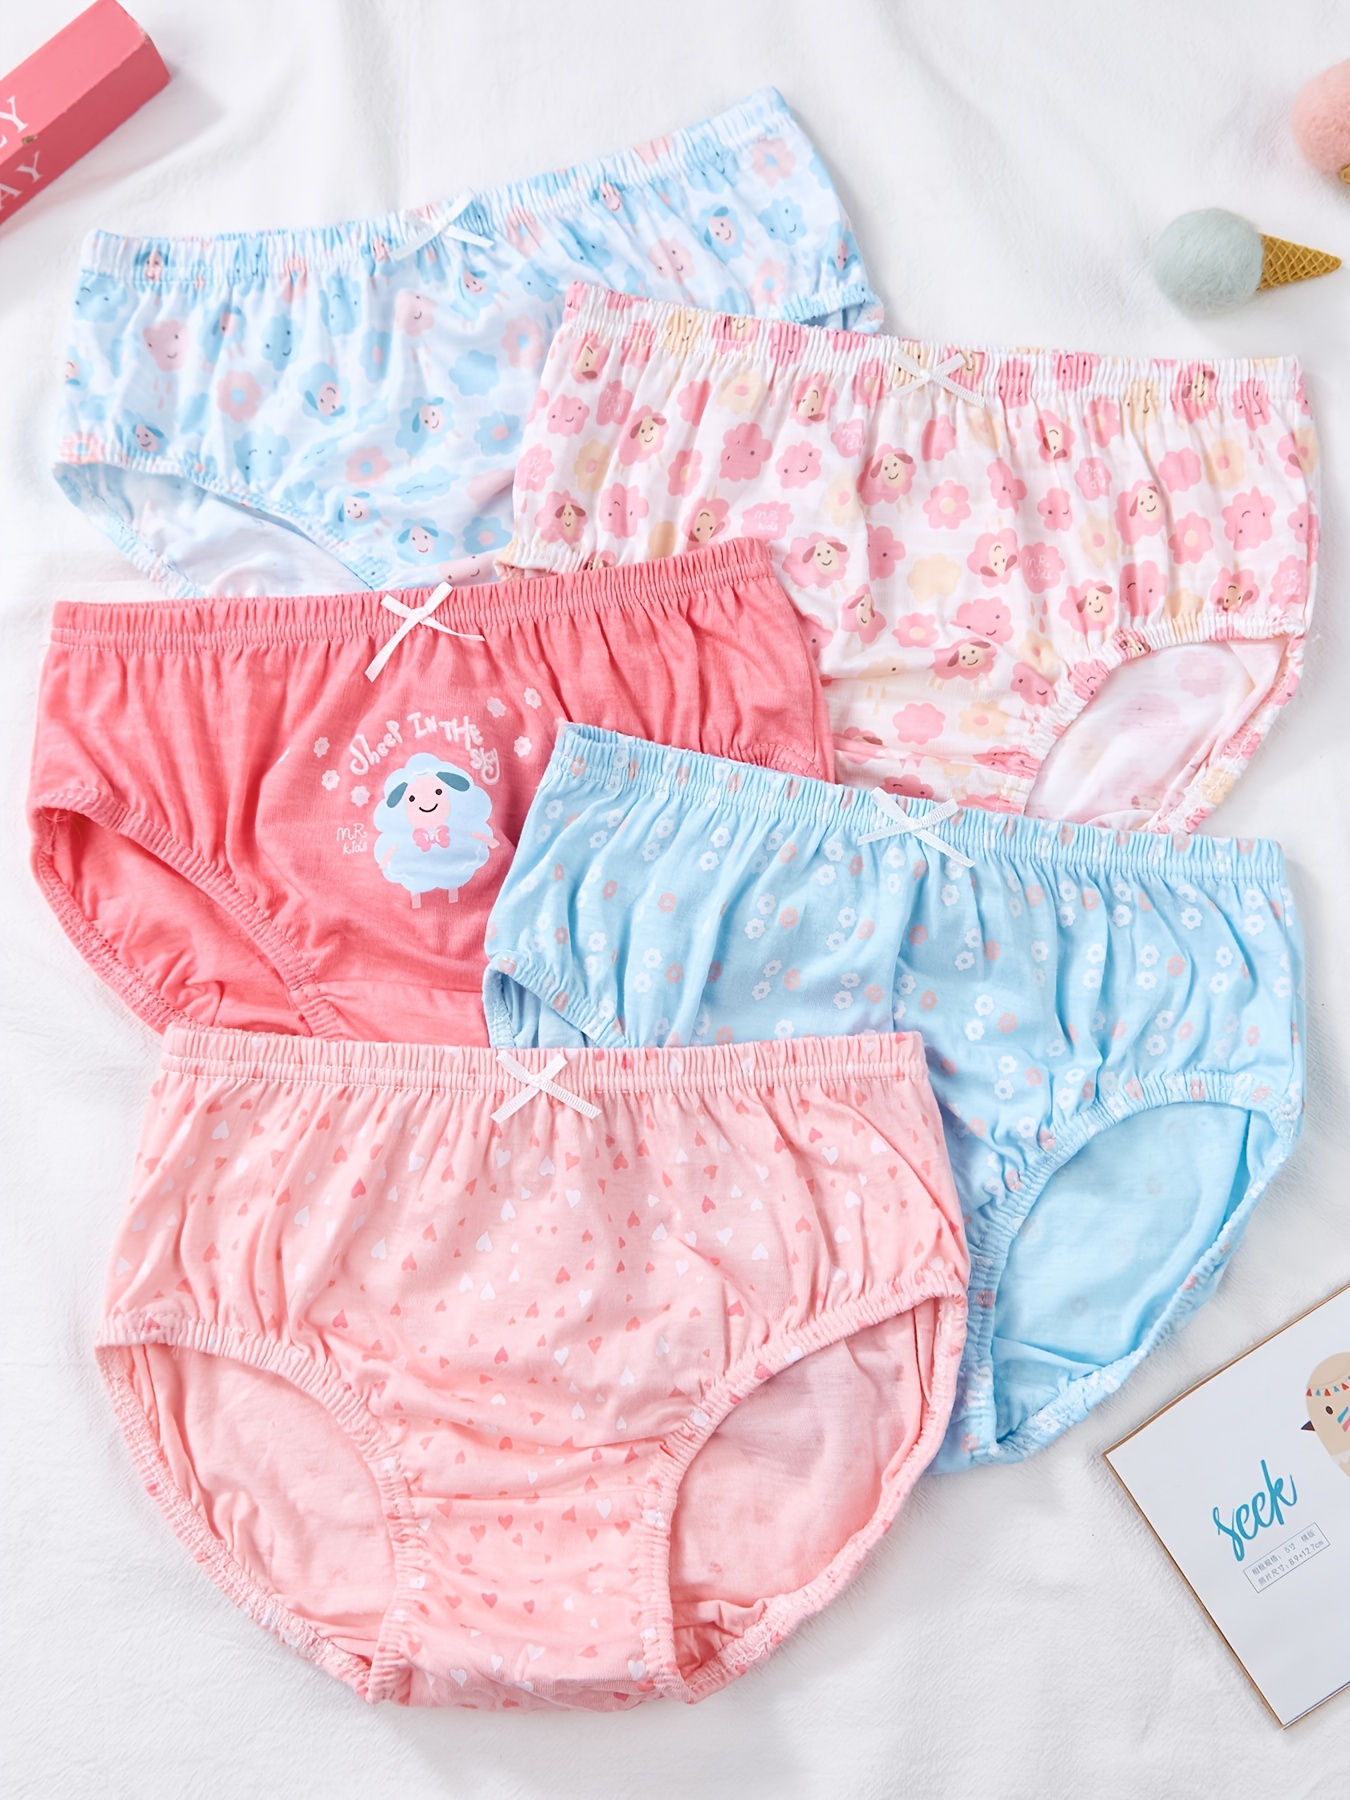 5PCS Girls Underwear Set, Soft Cotton Briefs Comfortable Panties for Teens  Girls Little Big Girls